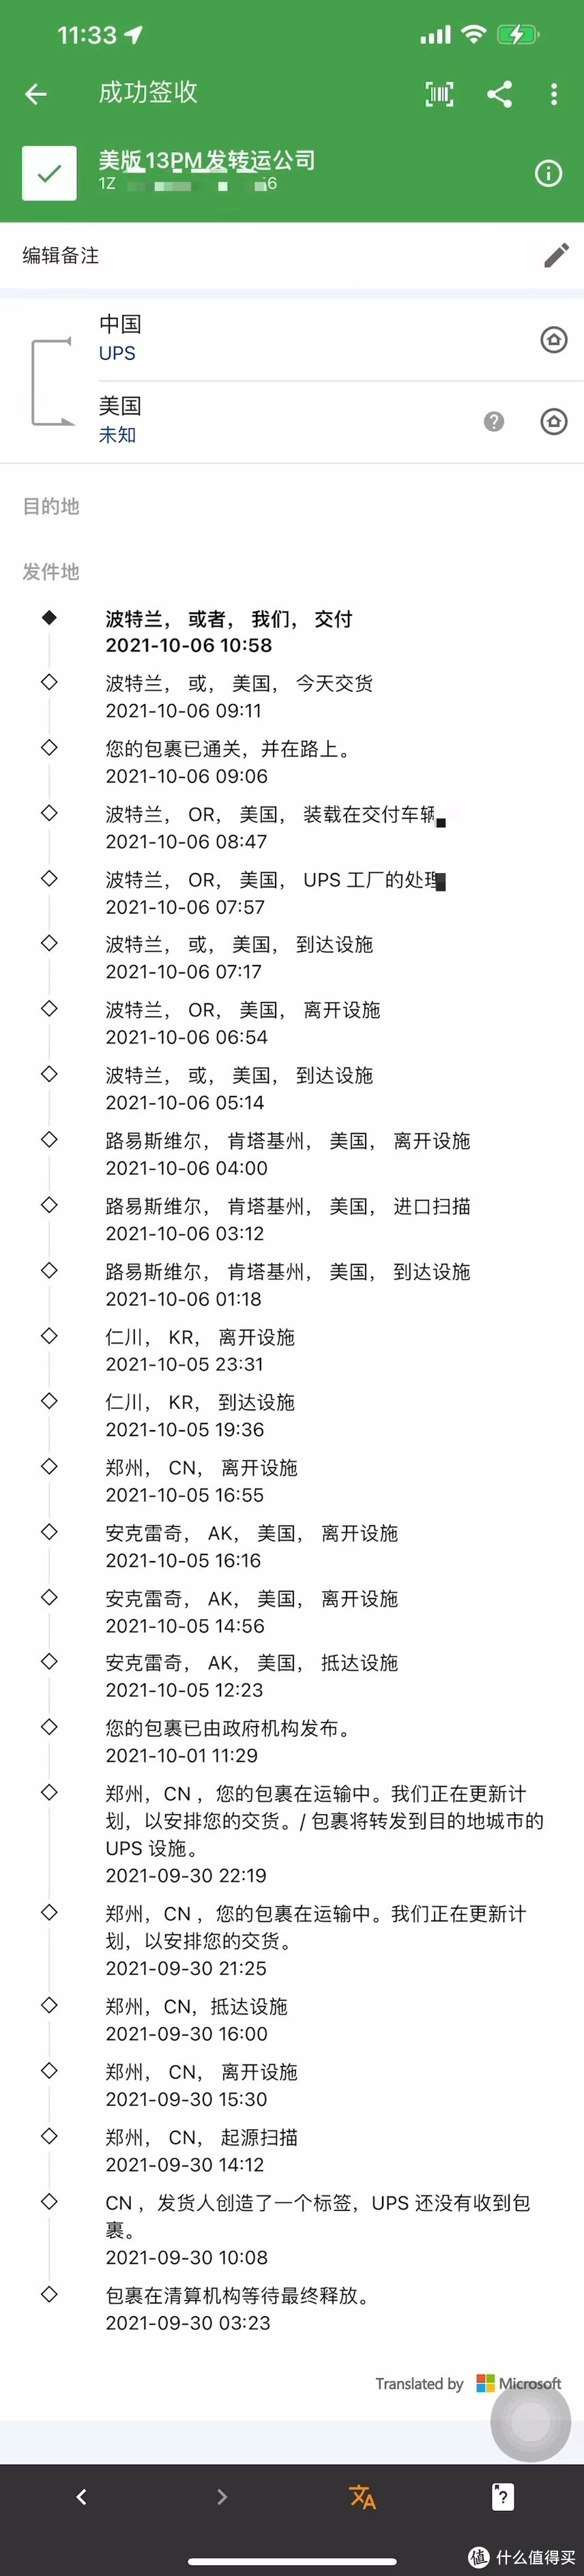 查询官网发货运单号，是郑州发往美国的，13PM跨越太平洋一次